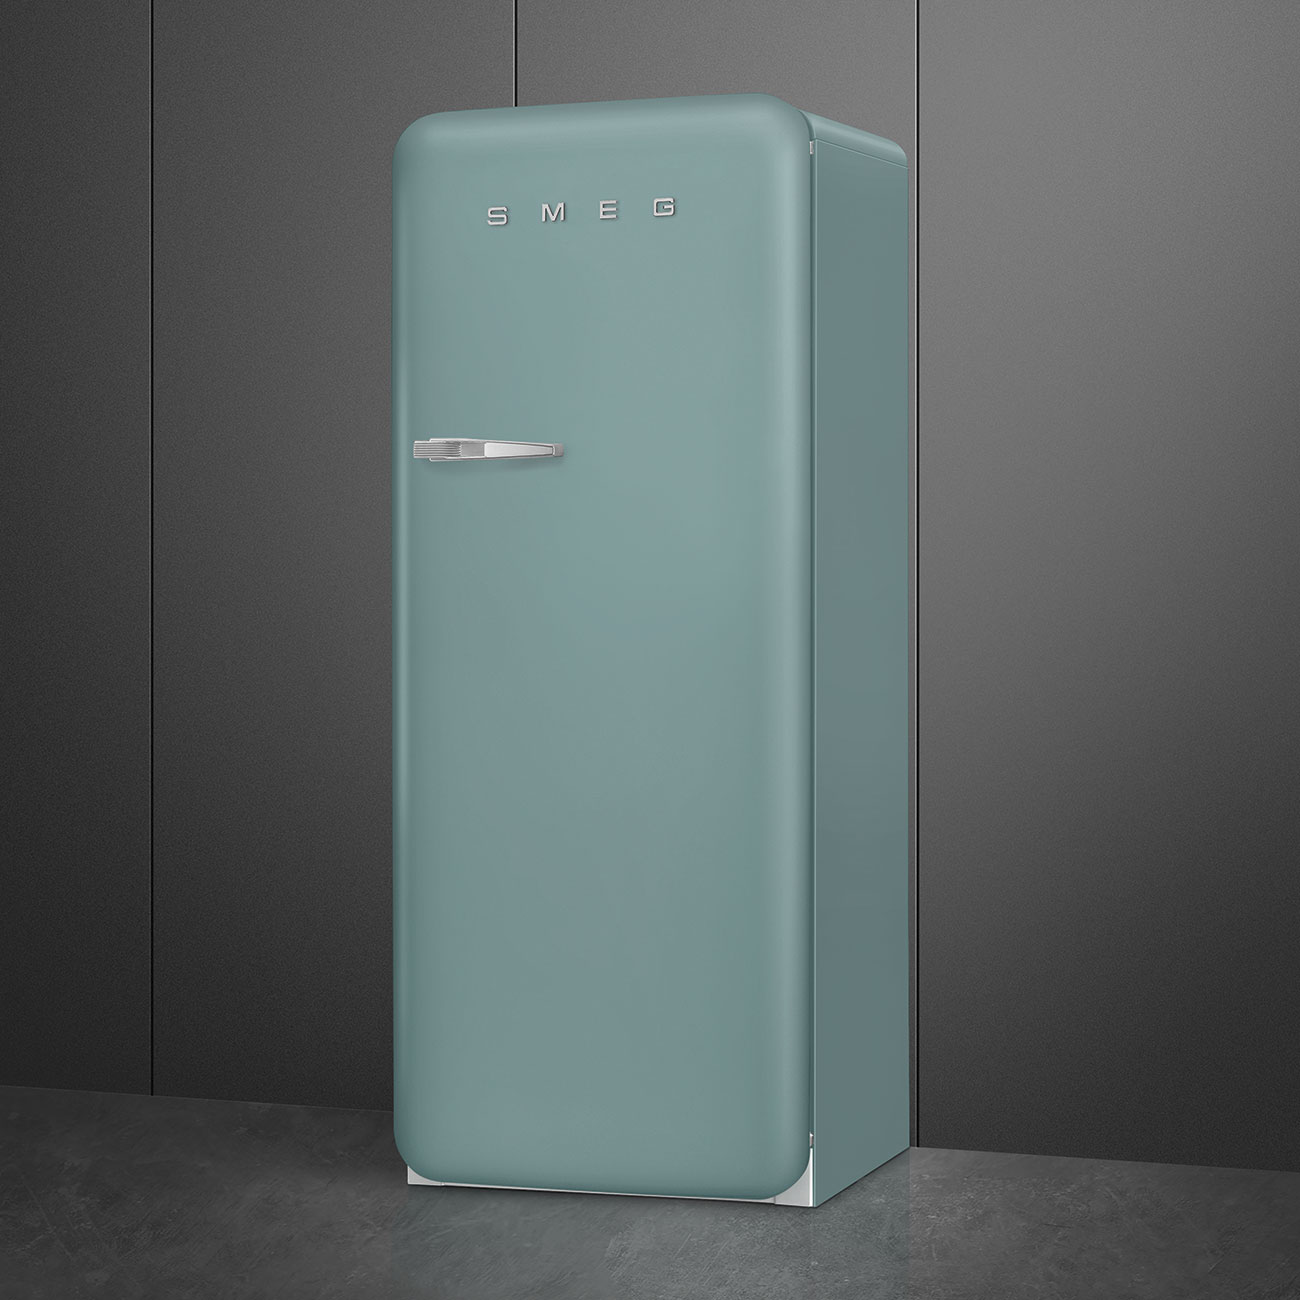 Emerald Green refrigerator - Smeg_3